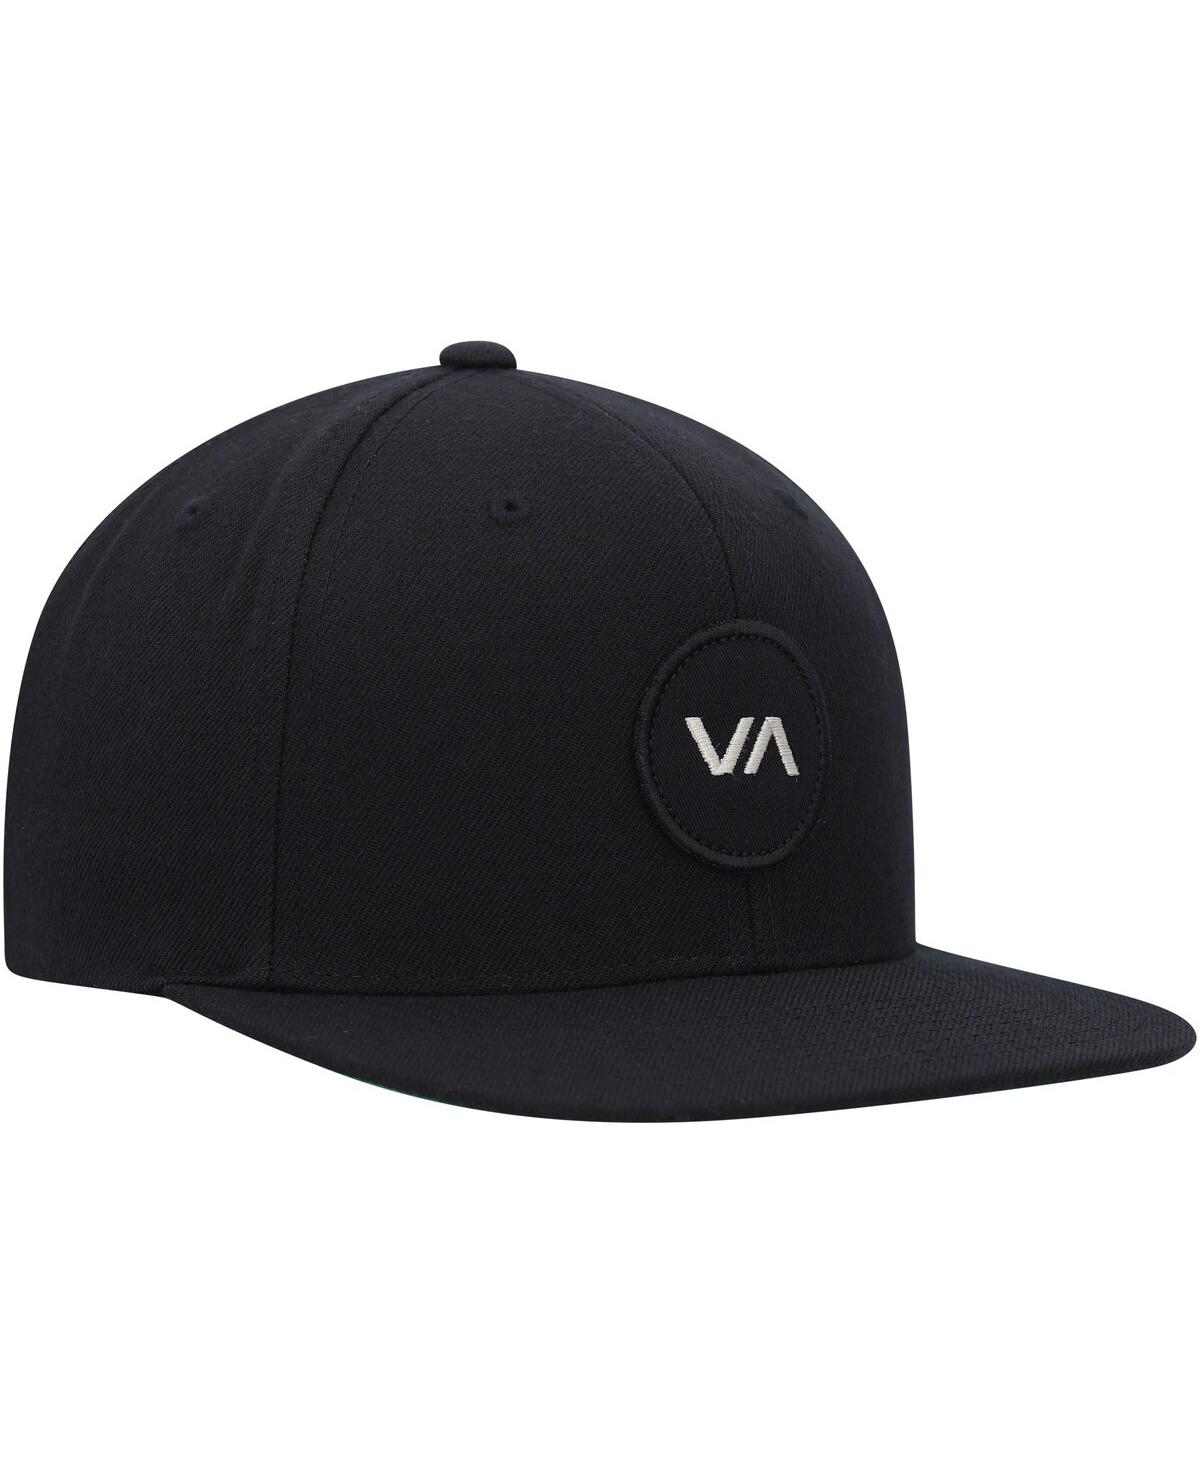 Shop Rvca Men's  Black Va Patch Snapback Hat